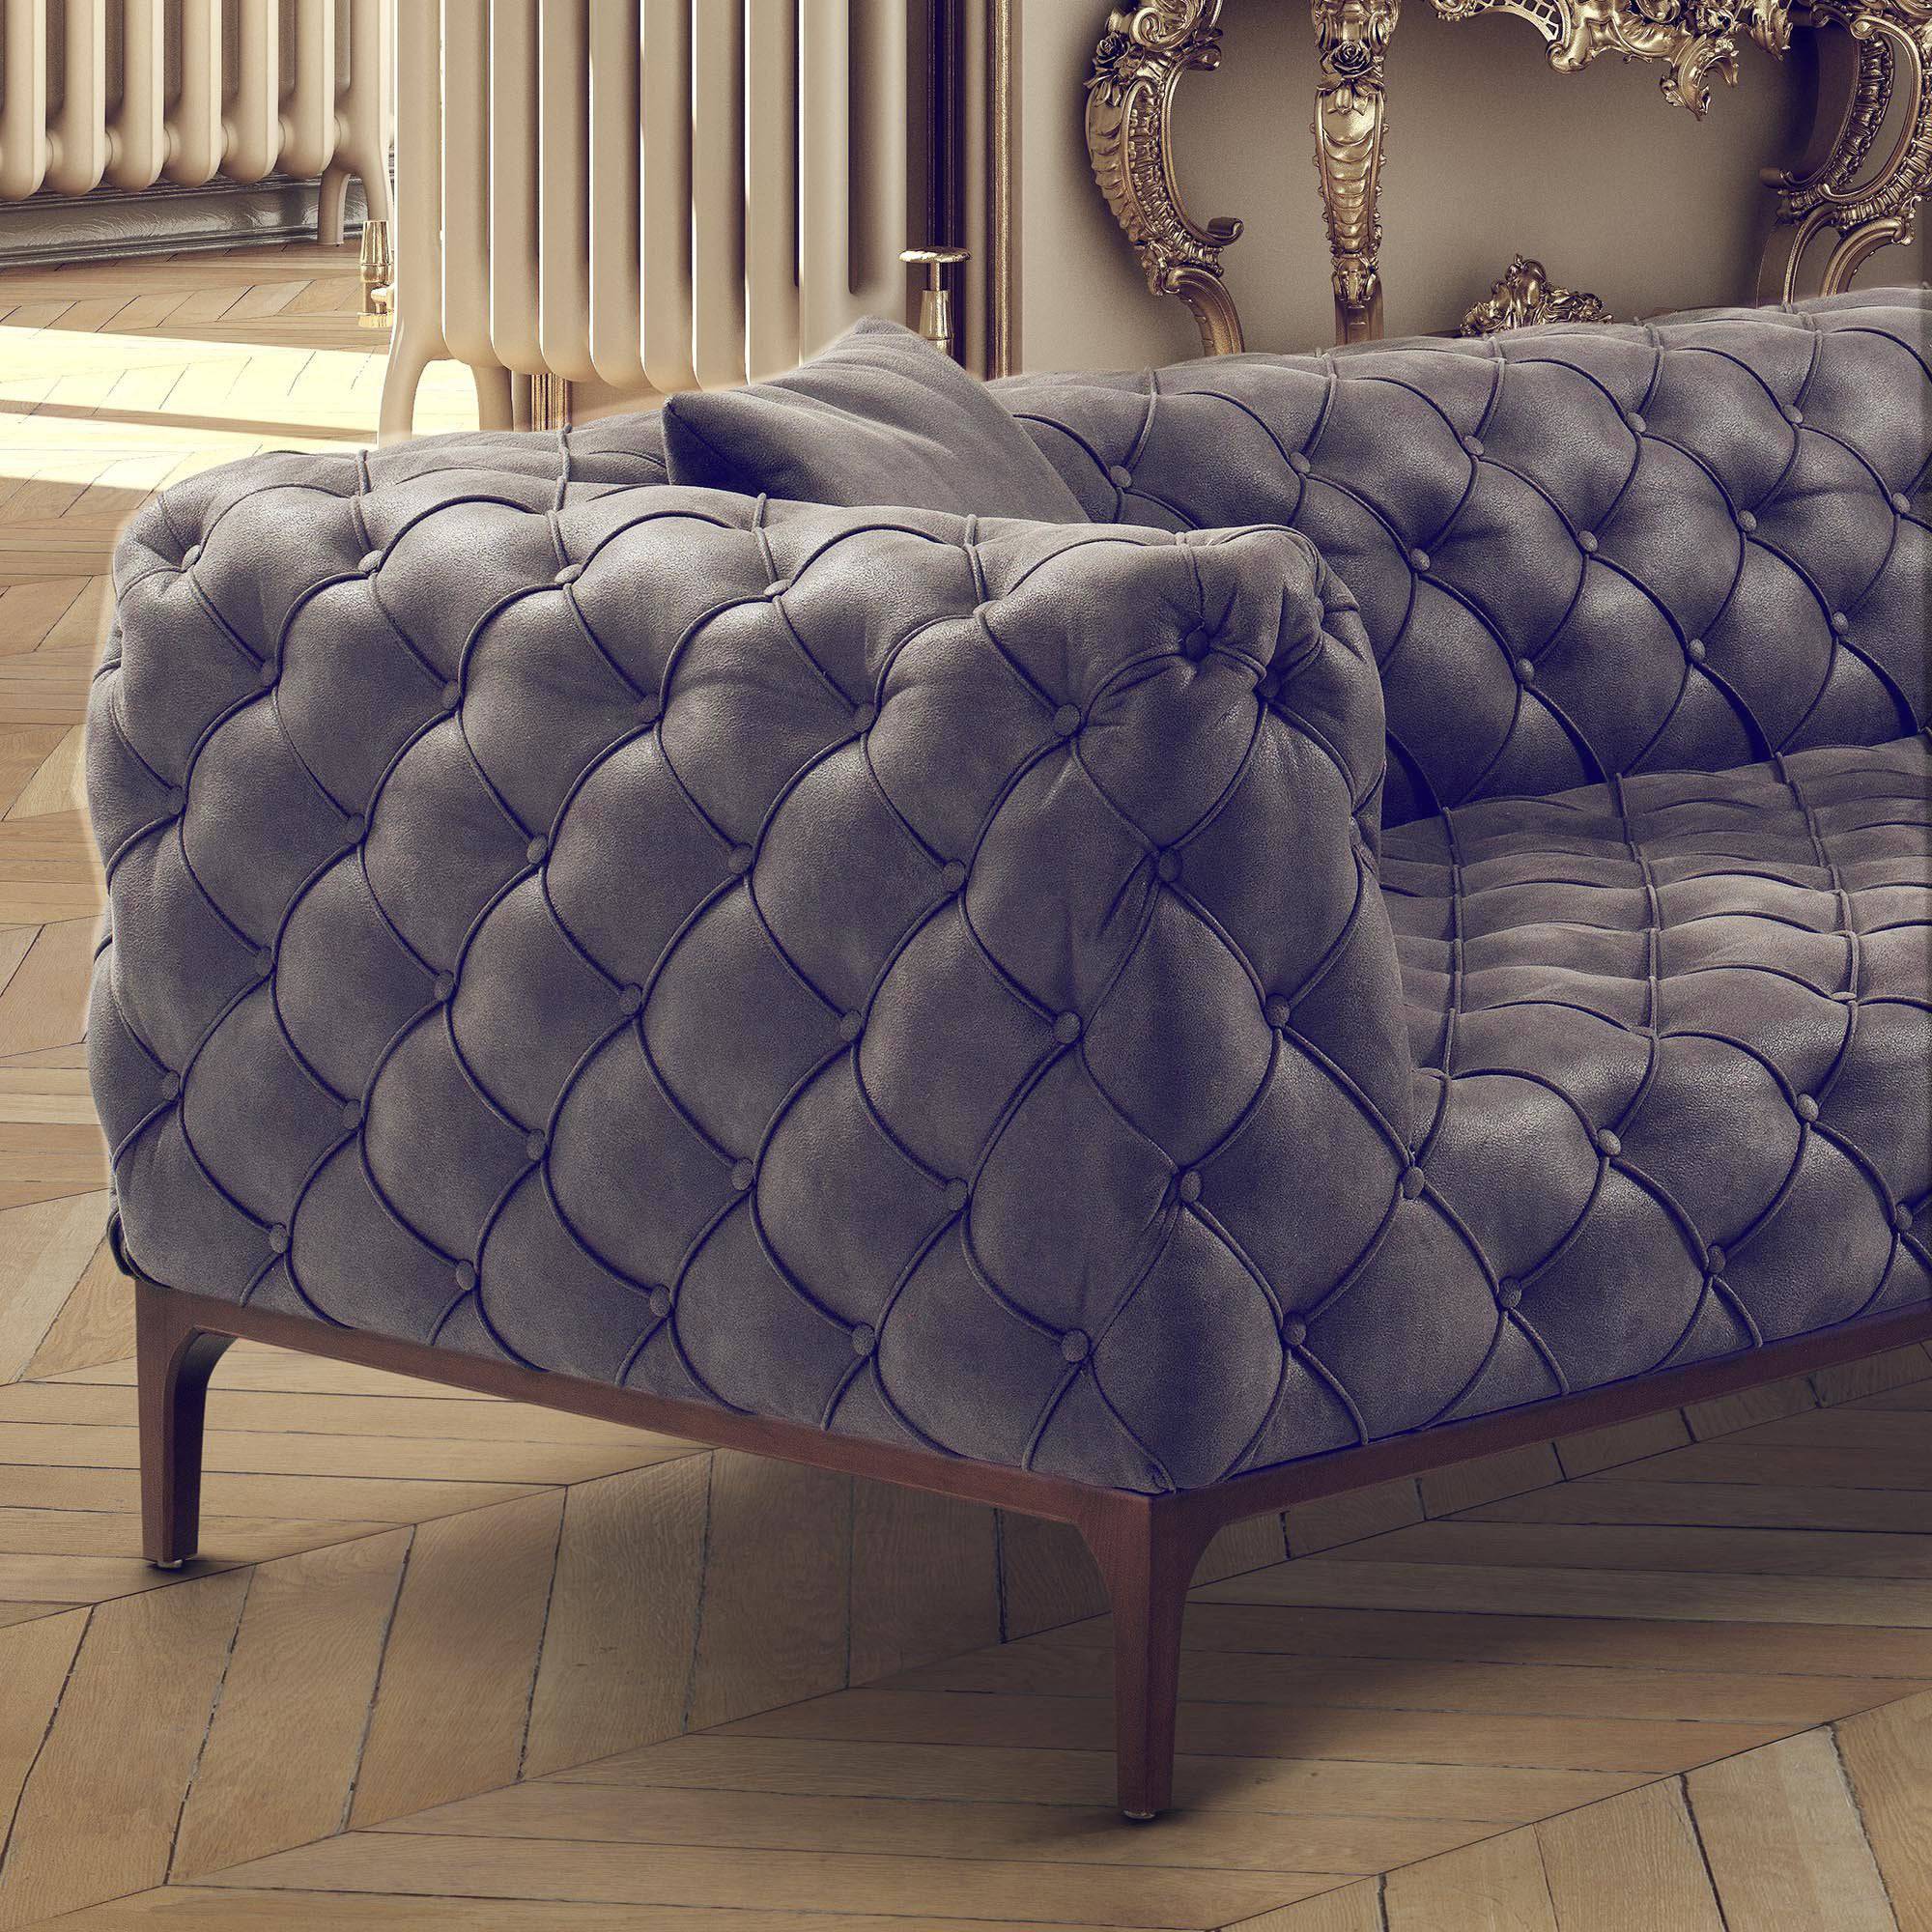 Fashion Sofa And 2 Cushions Fas001 -  Sofas | أريكة فاشون و 2 وسائد - ebarza Furniture UAE | Shop Modern Furniture in Abu Dhabi & Dubai - مفروشات ايبازرا في الامارات | تسوق اثاث عصري وديكورات مميزة في دبي وابوظبي